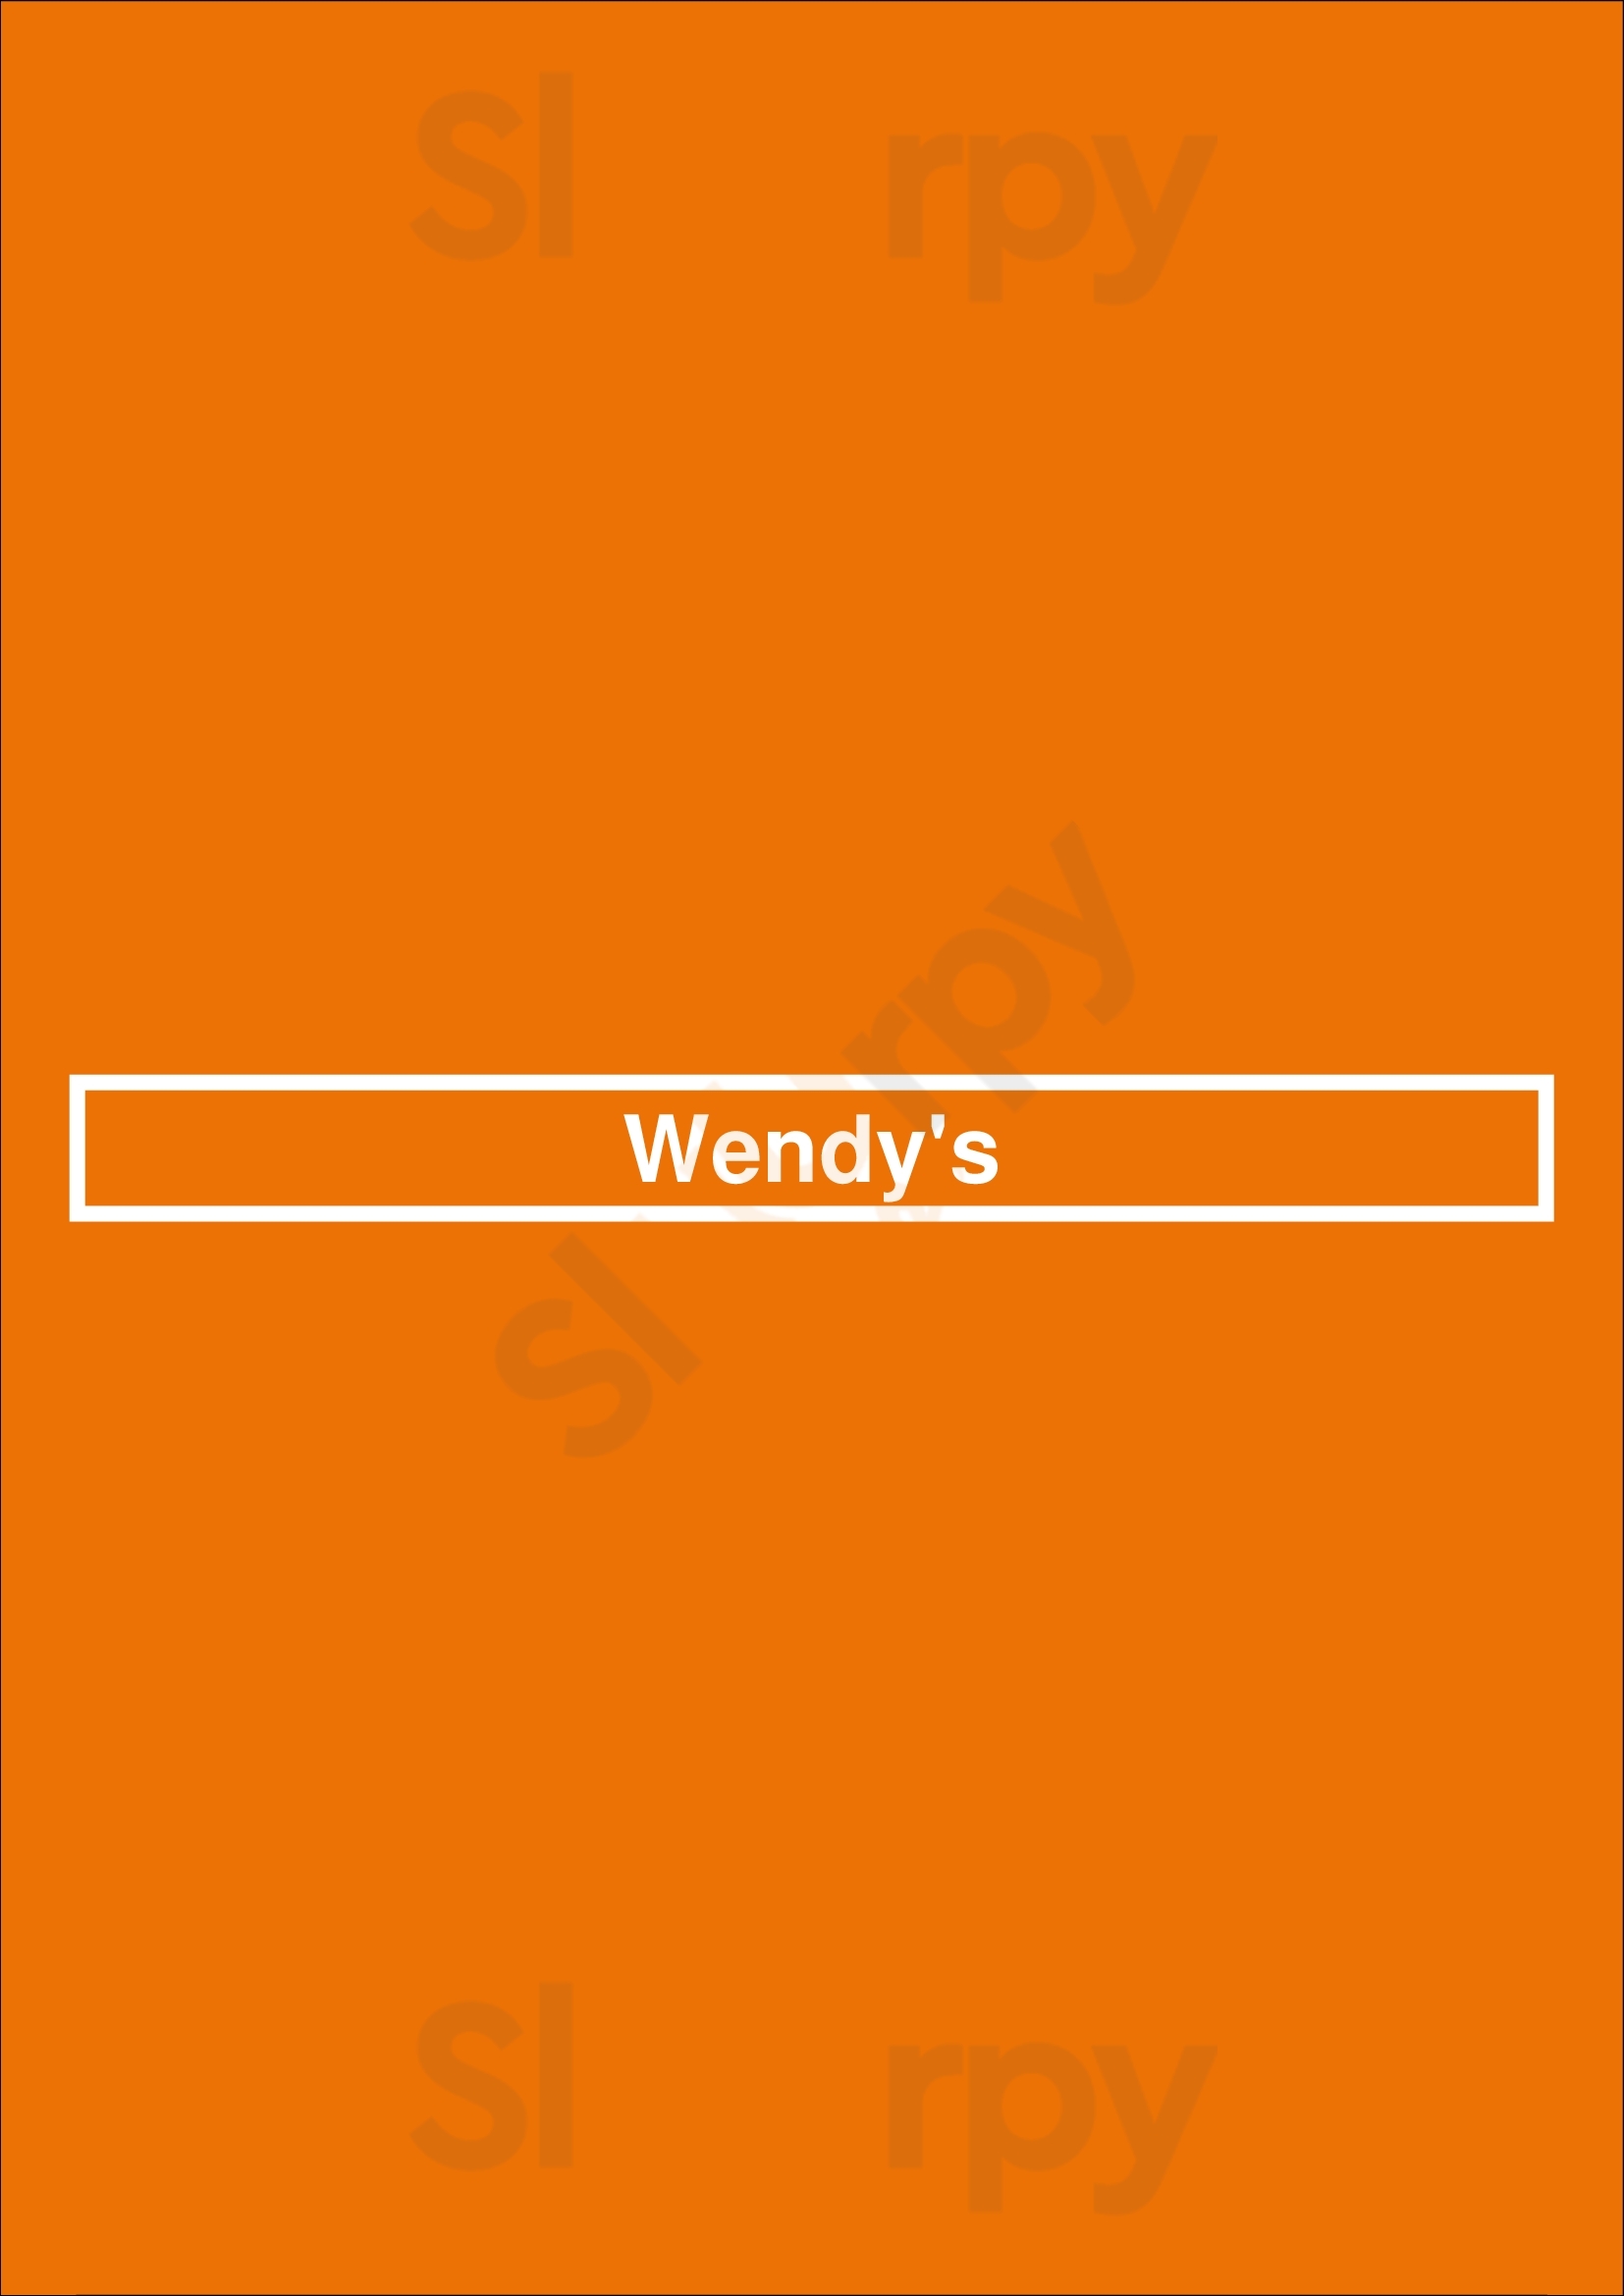 Wendy's Indianapolis Menu - 1